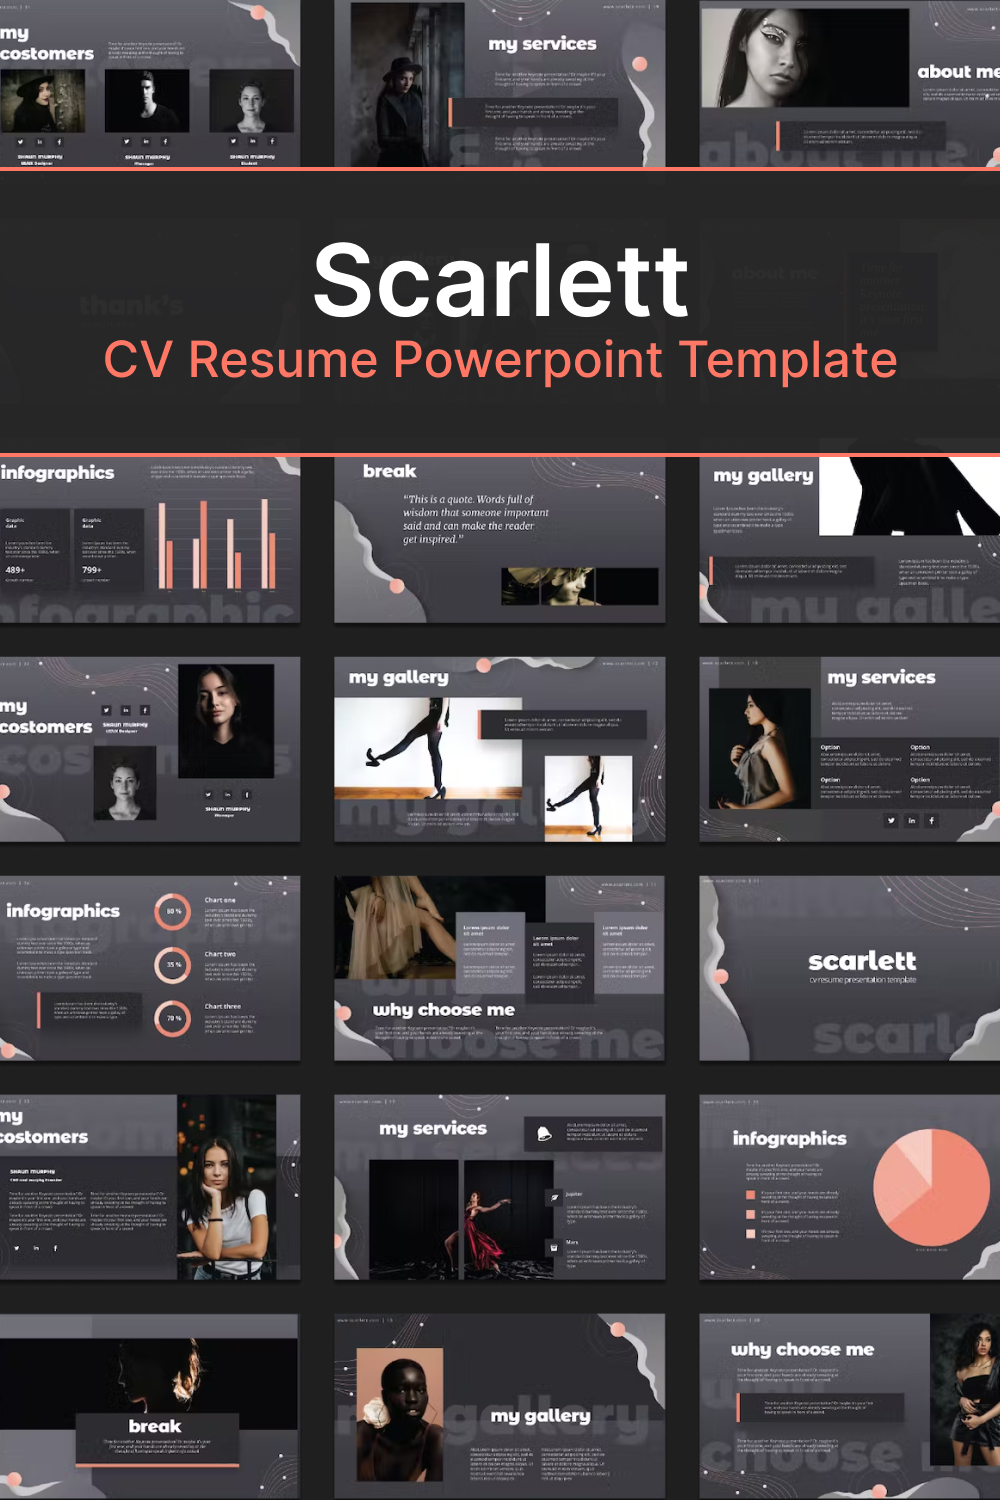 Scarlett cv resume powerpoint template of pinterest.